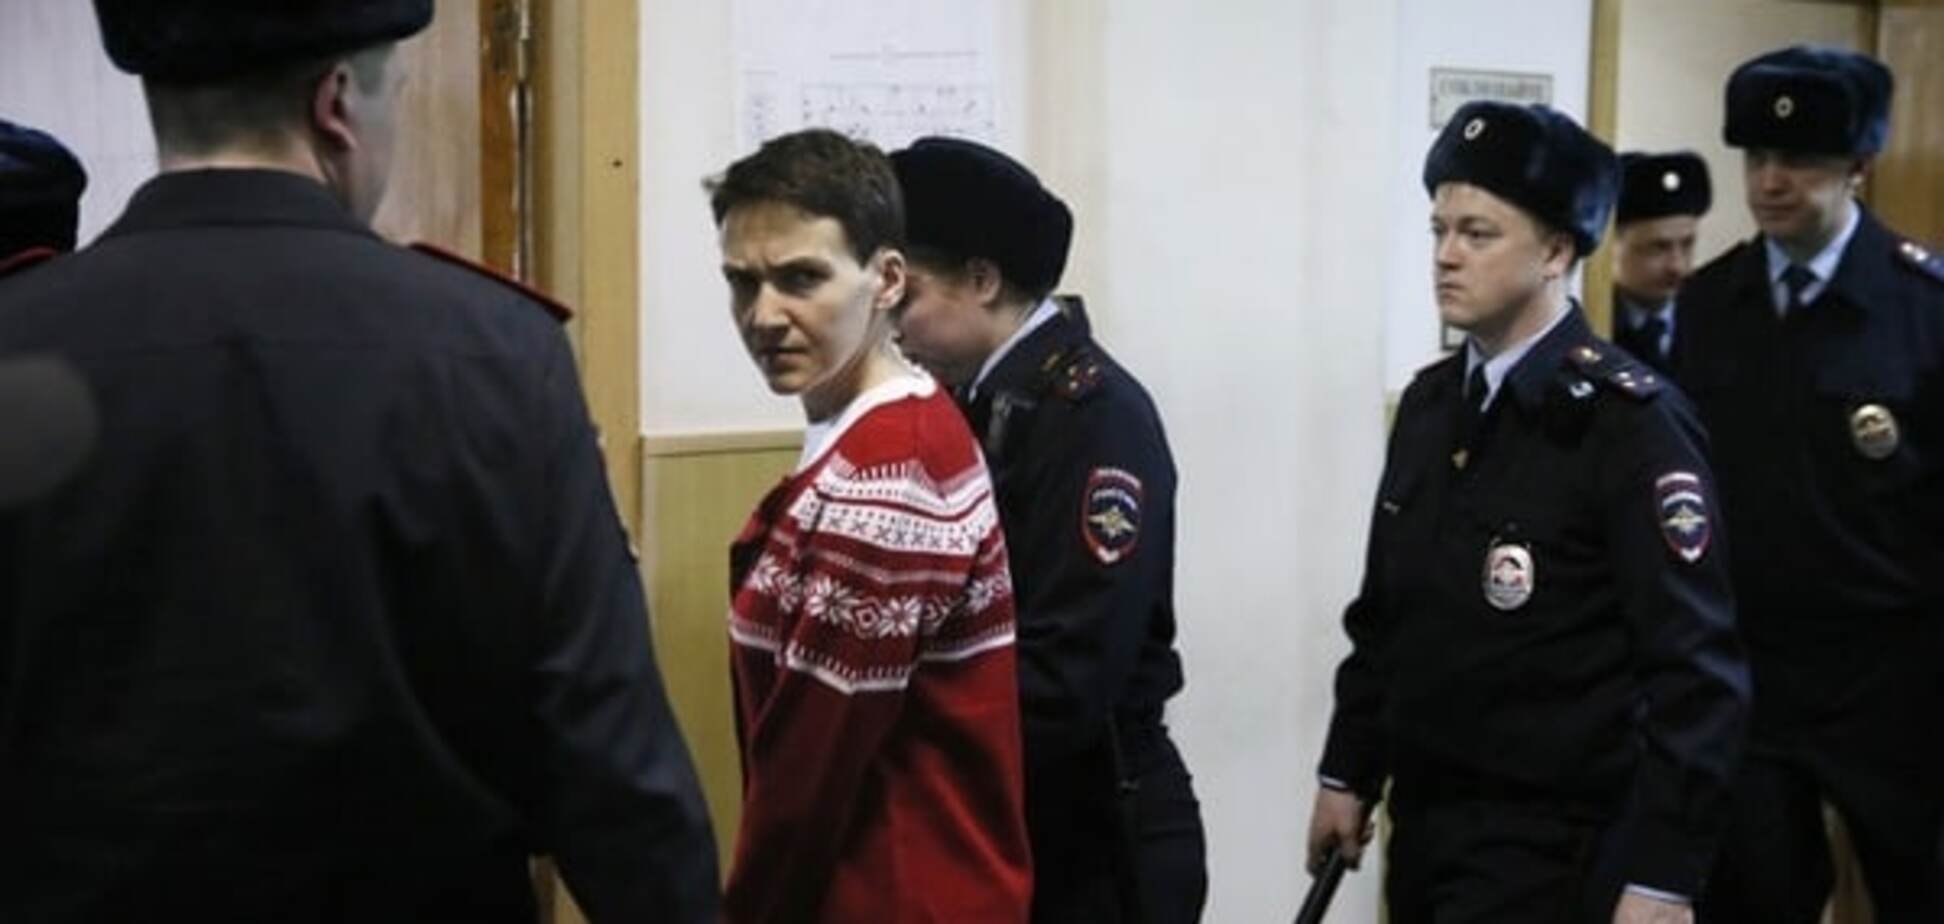 Только на доставку Савченко из СИЗО в суд Россия потратила 25 миллионов - адвокат